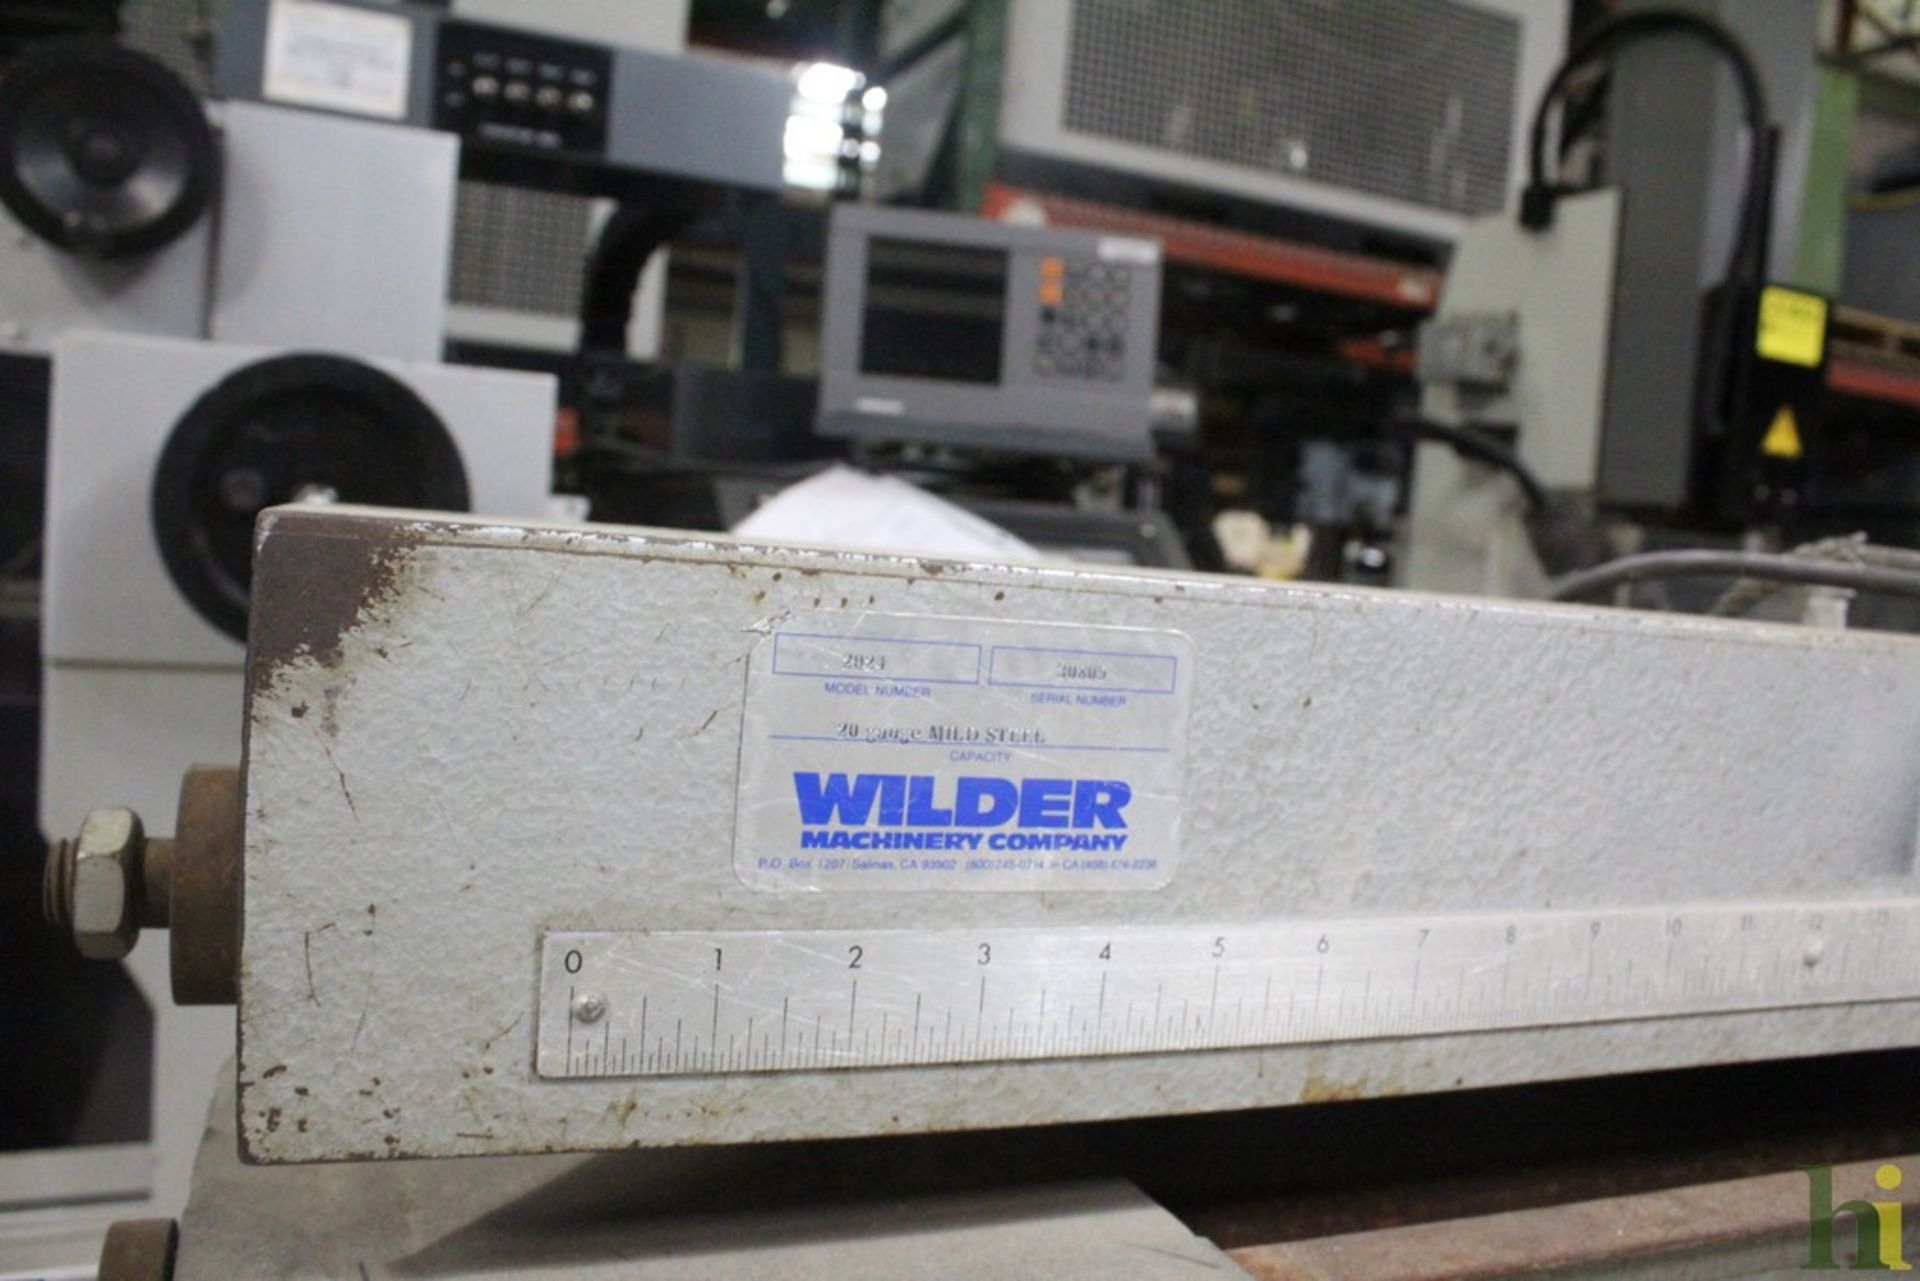 WILDER 20 GA. X 24” MODEL 2024 SLITTER, S/N 30809 - Image 3 of 3